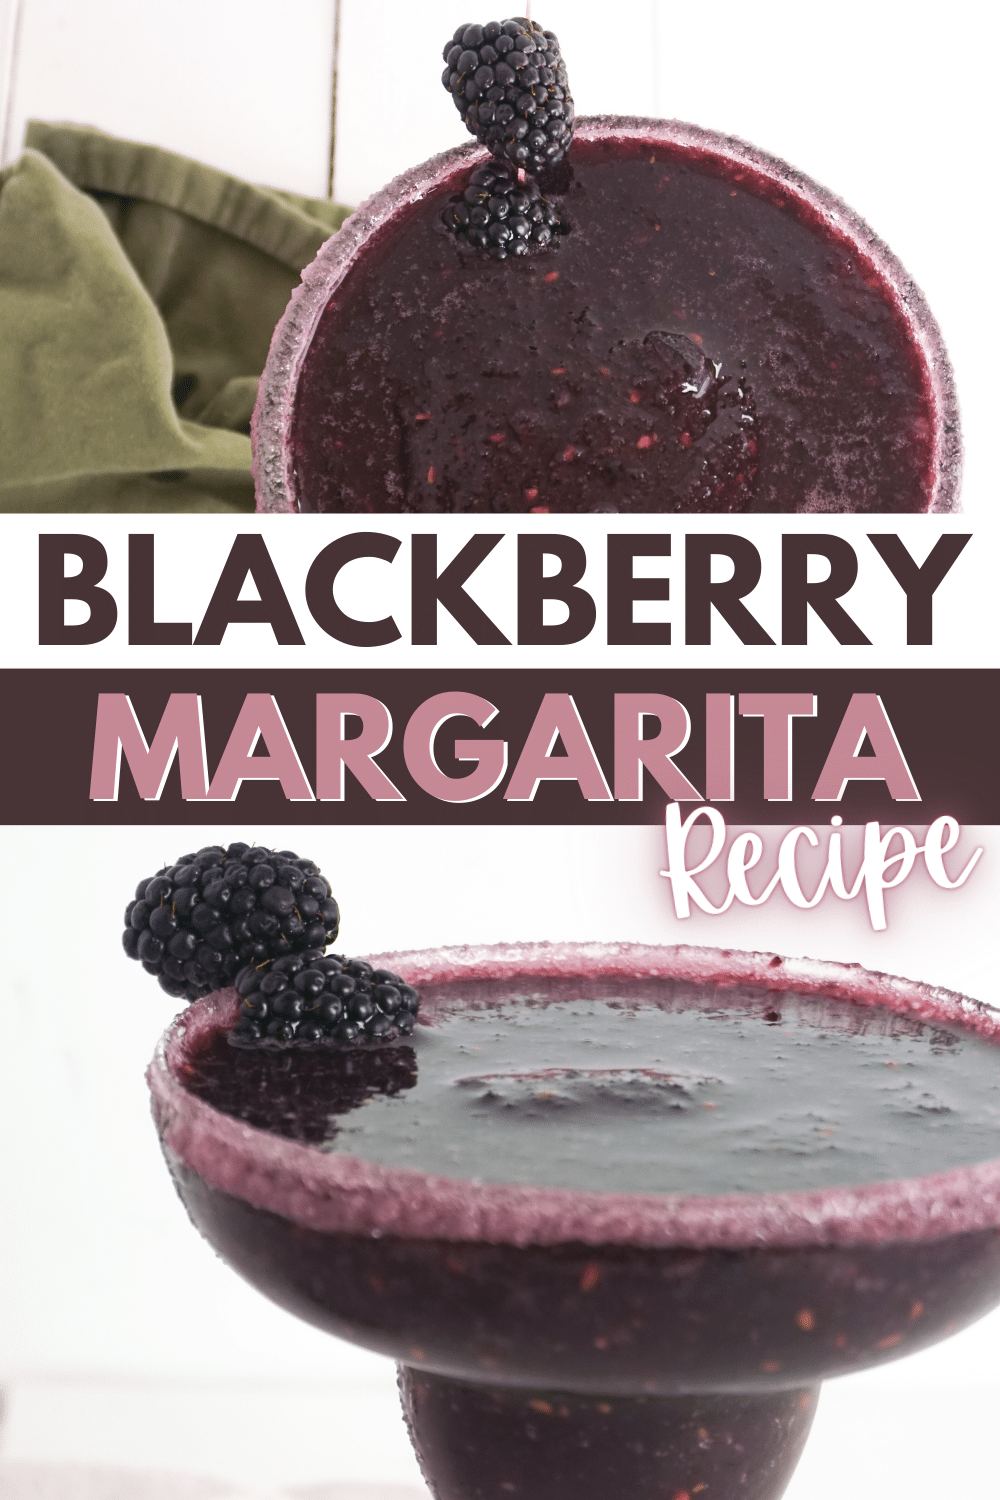 Blackberry Margarita Recipe